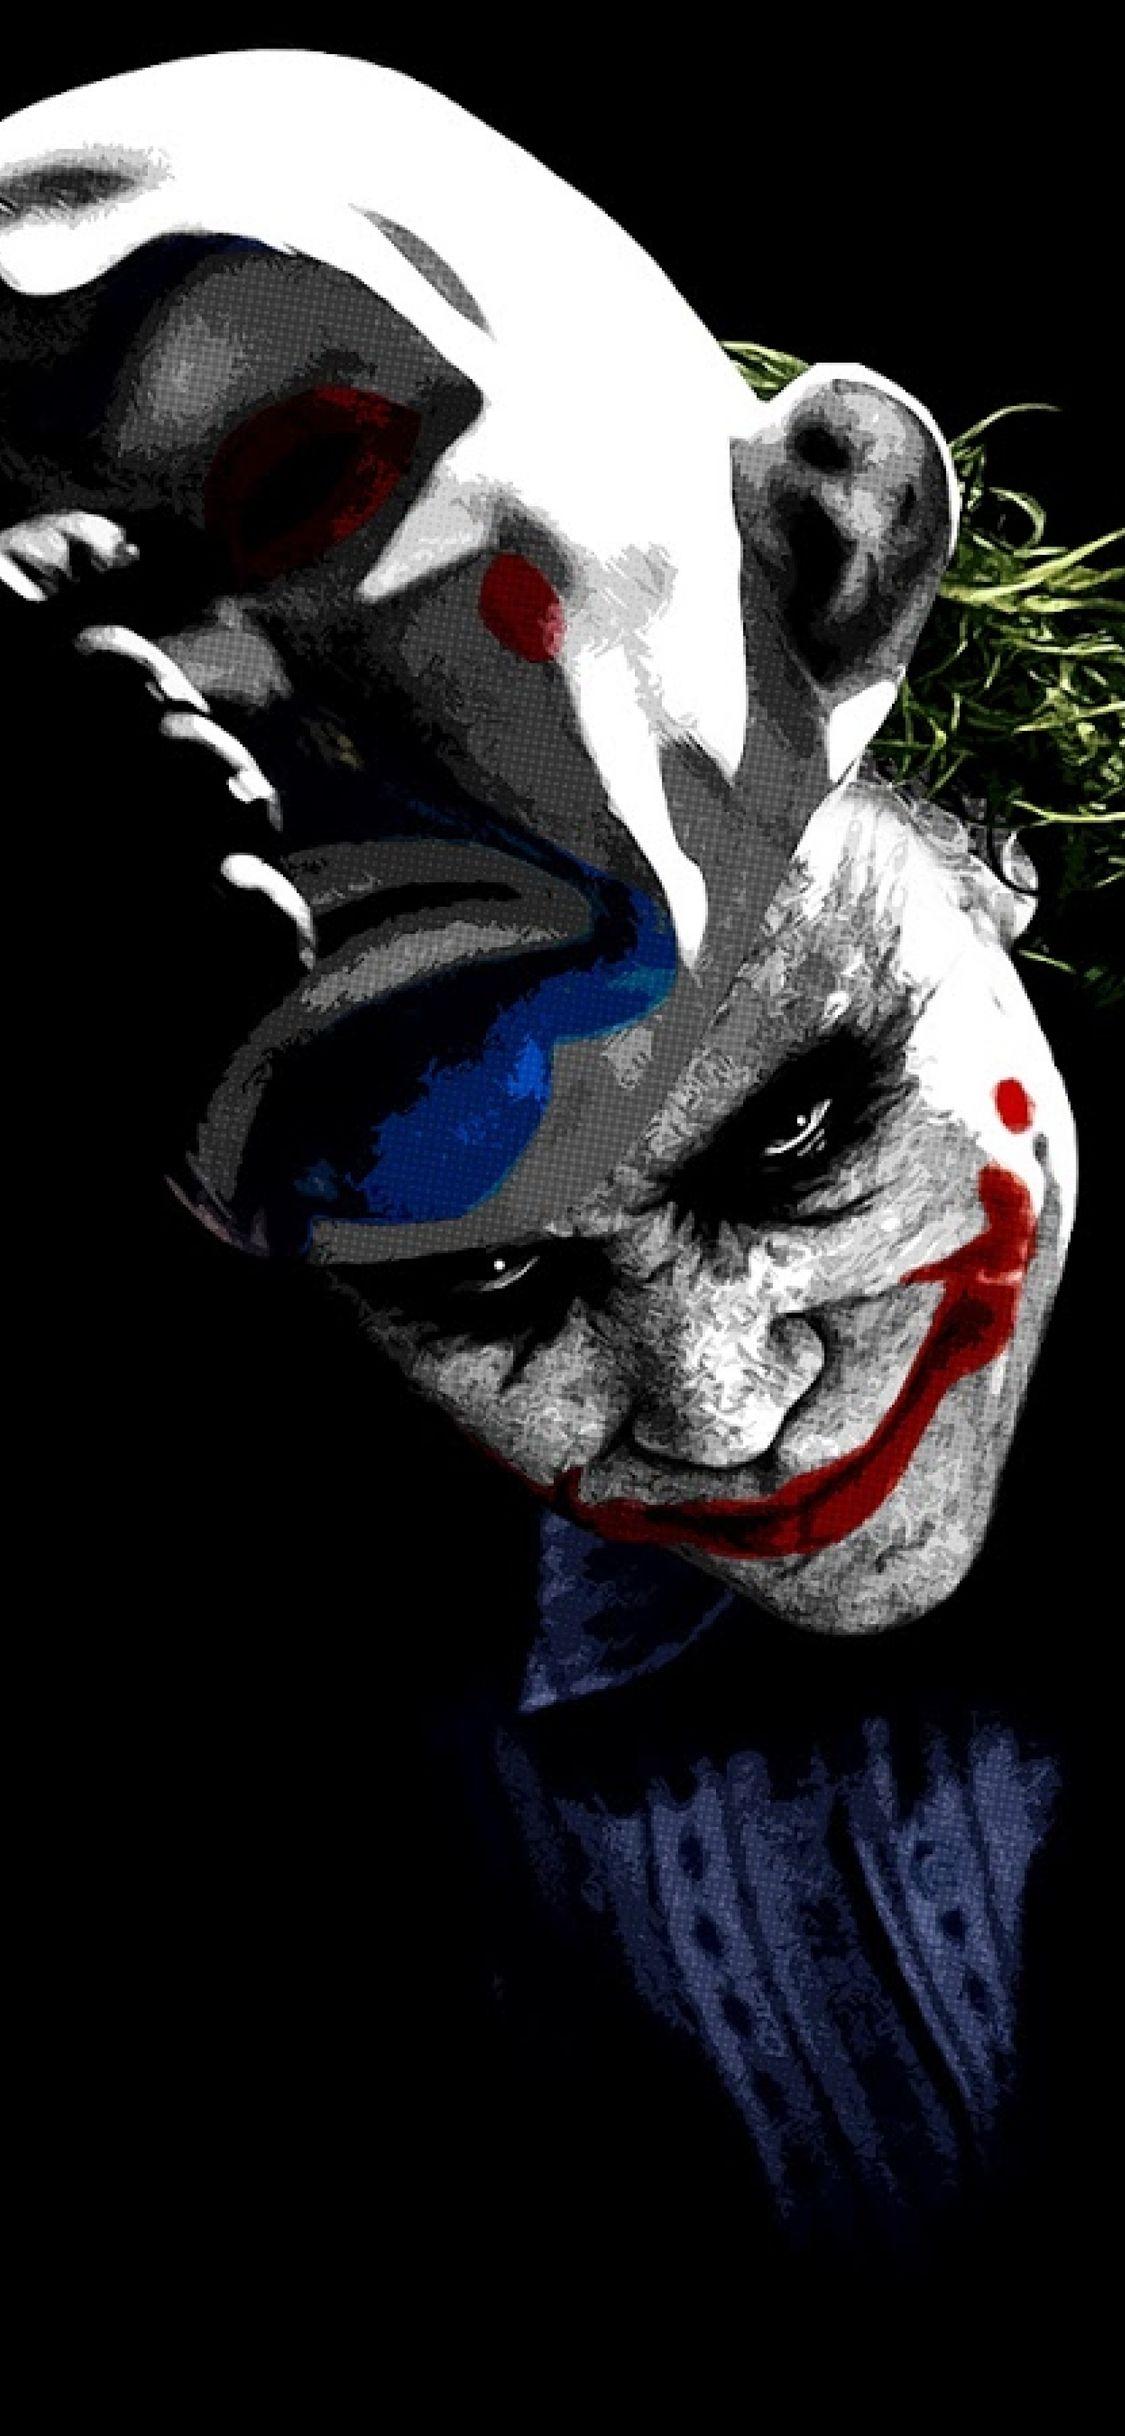 Joker Abstract HD iPhone Wallpaper Free Joker